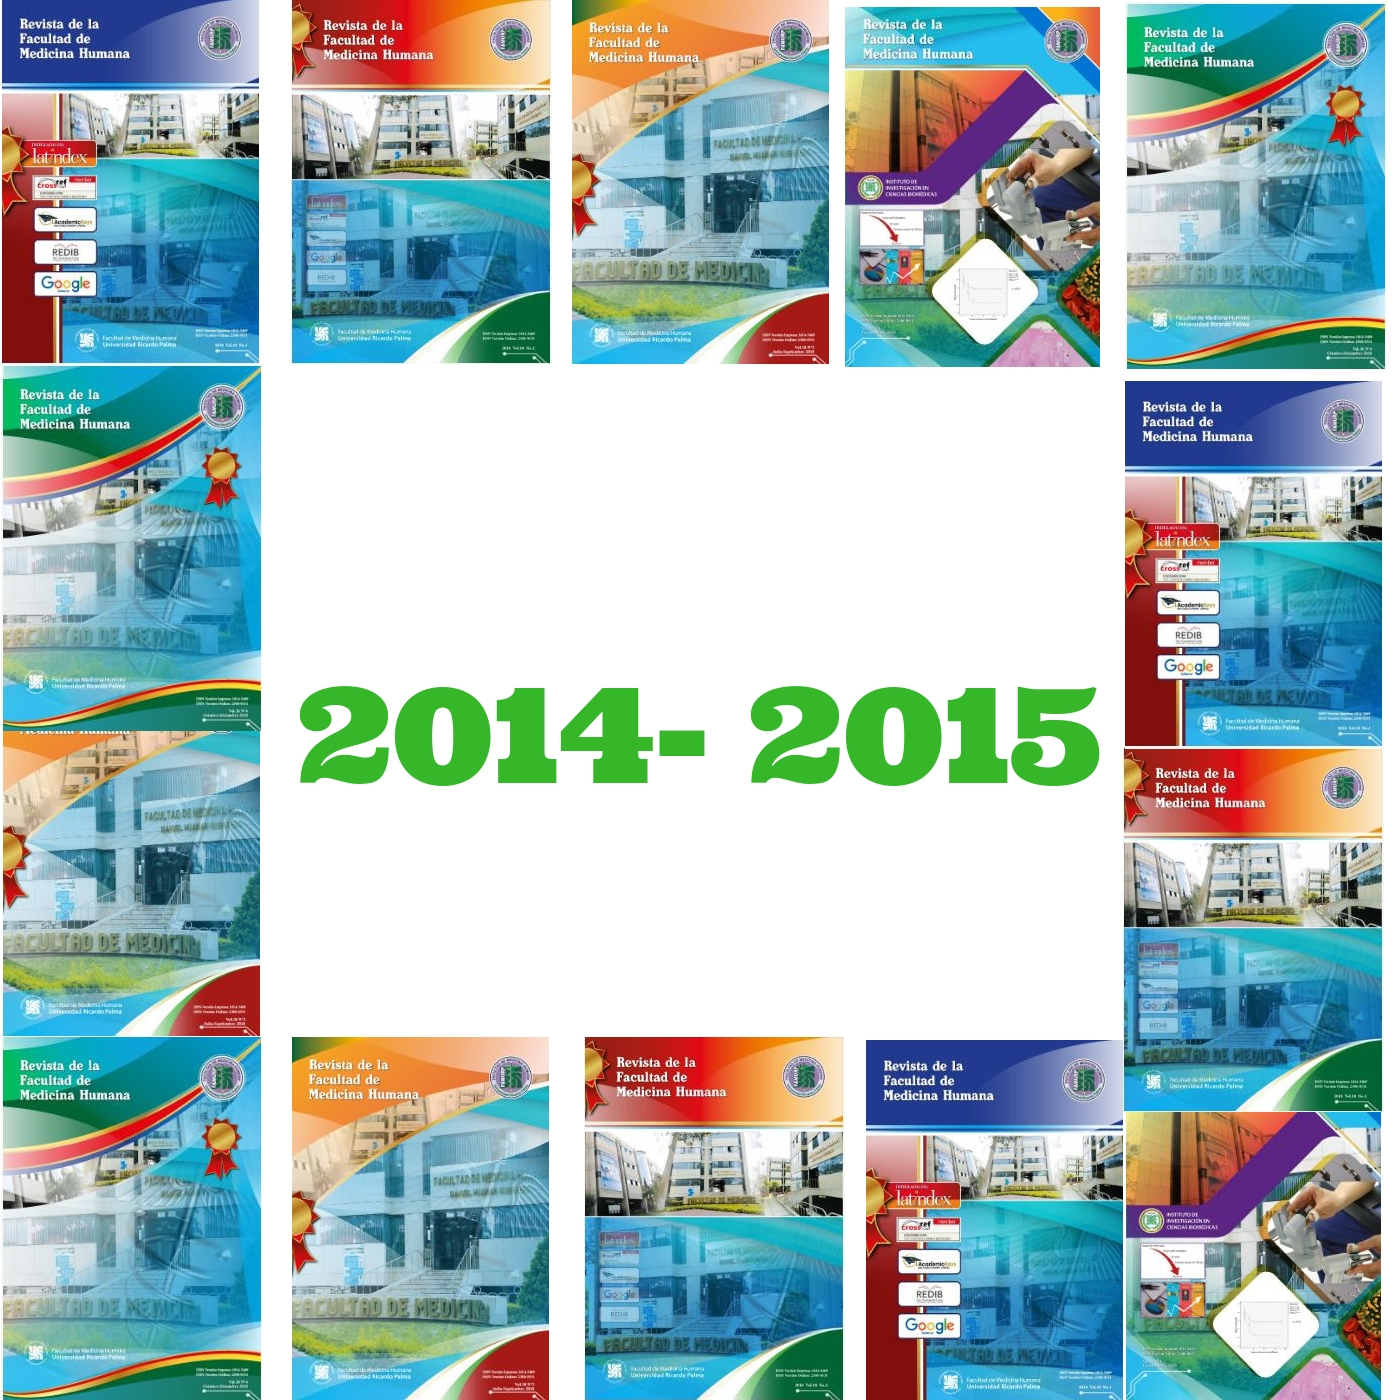 					View Vol. 15 No. 3 (2015): Revista de la Facultad de Medicina Humana
				